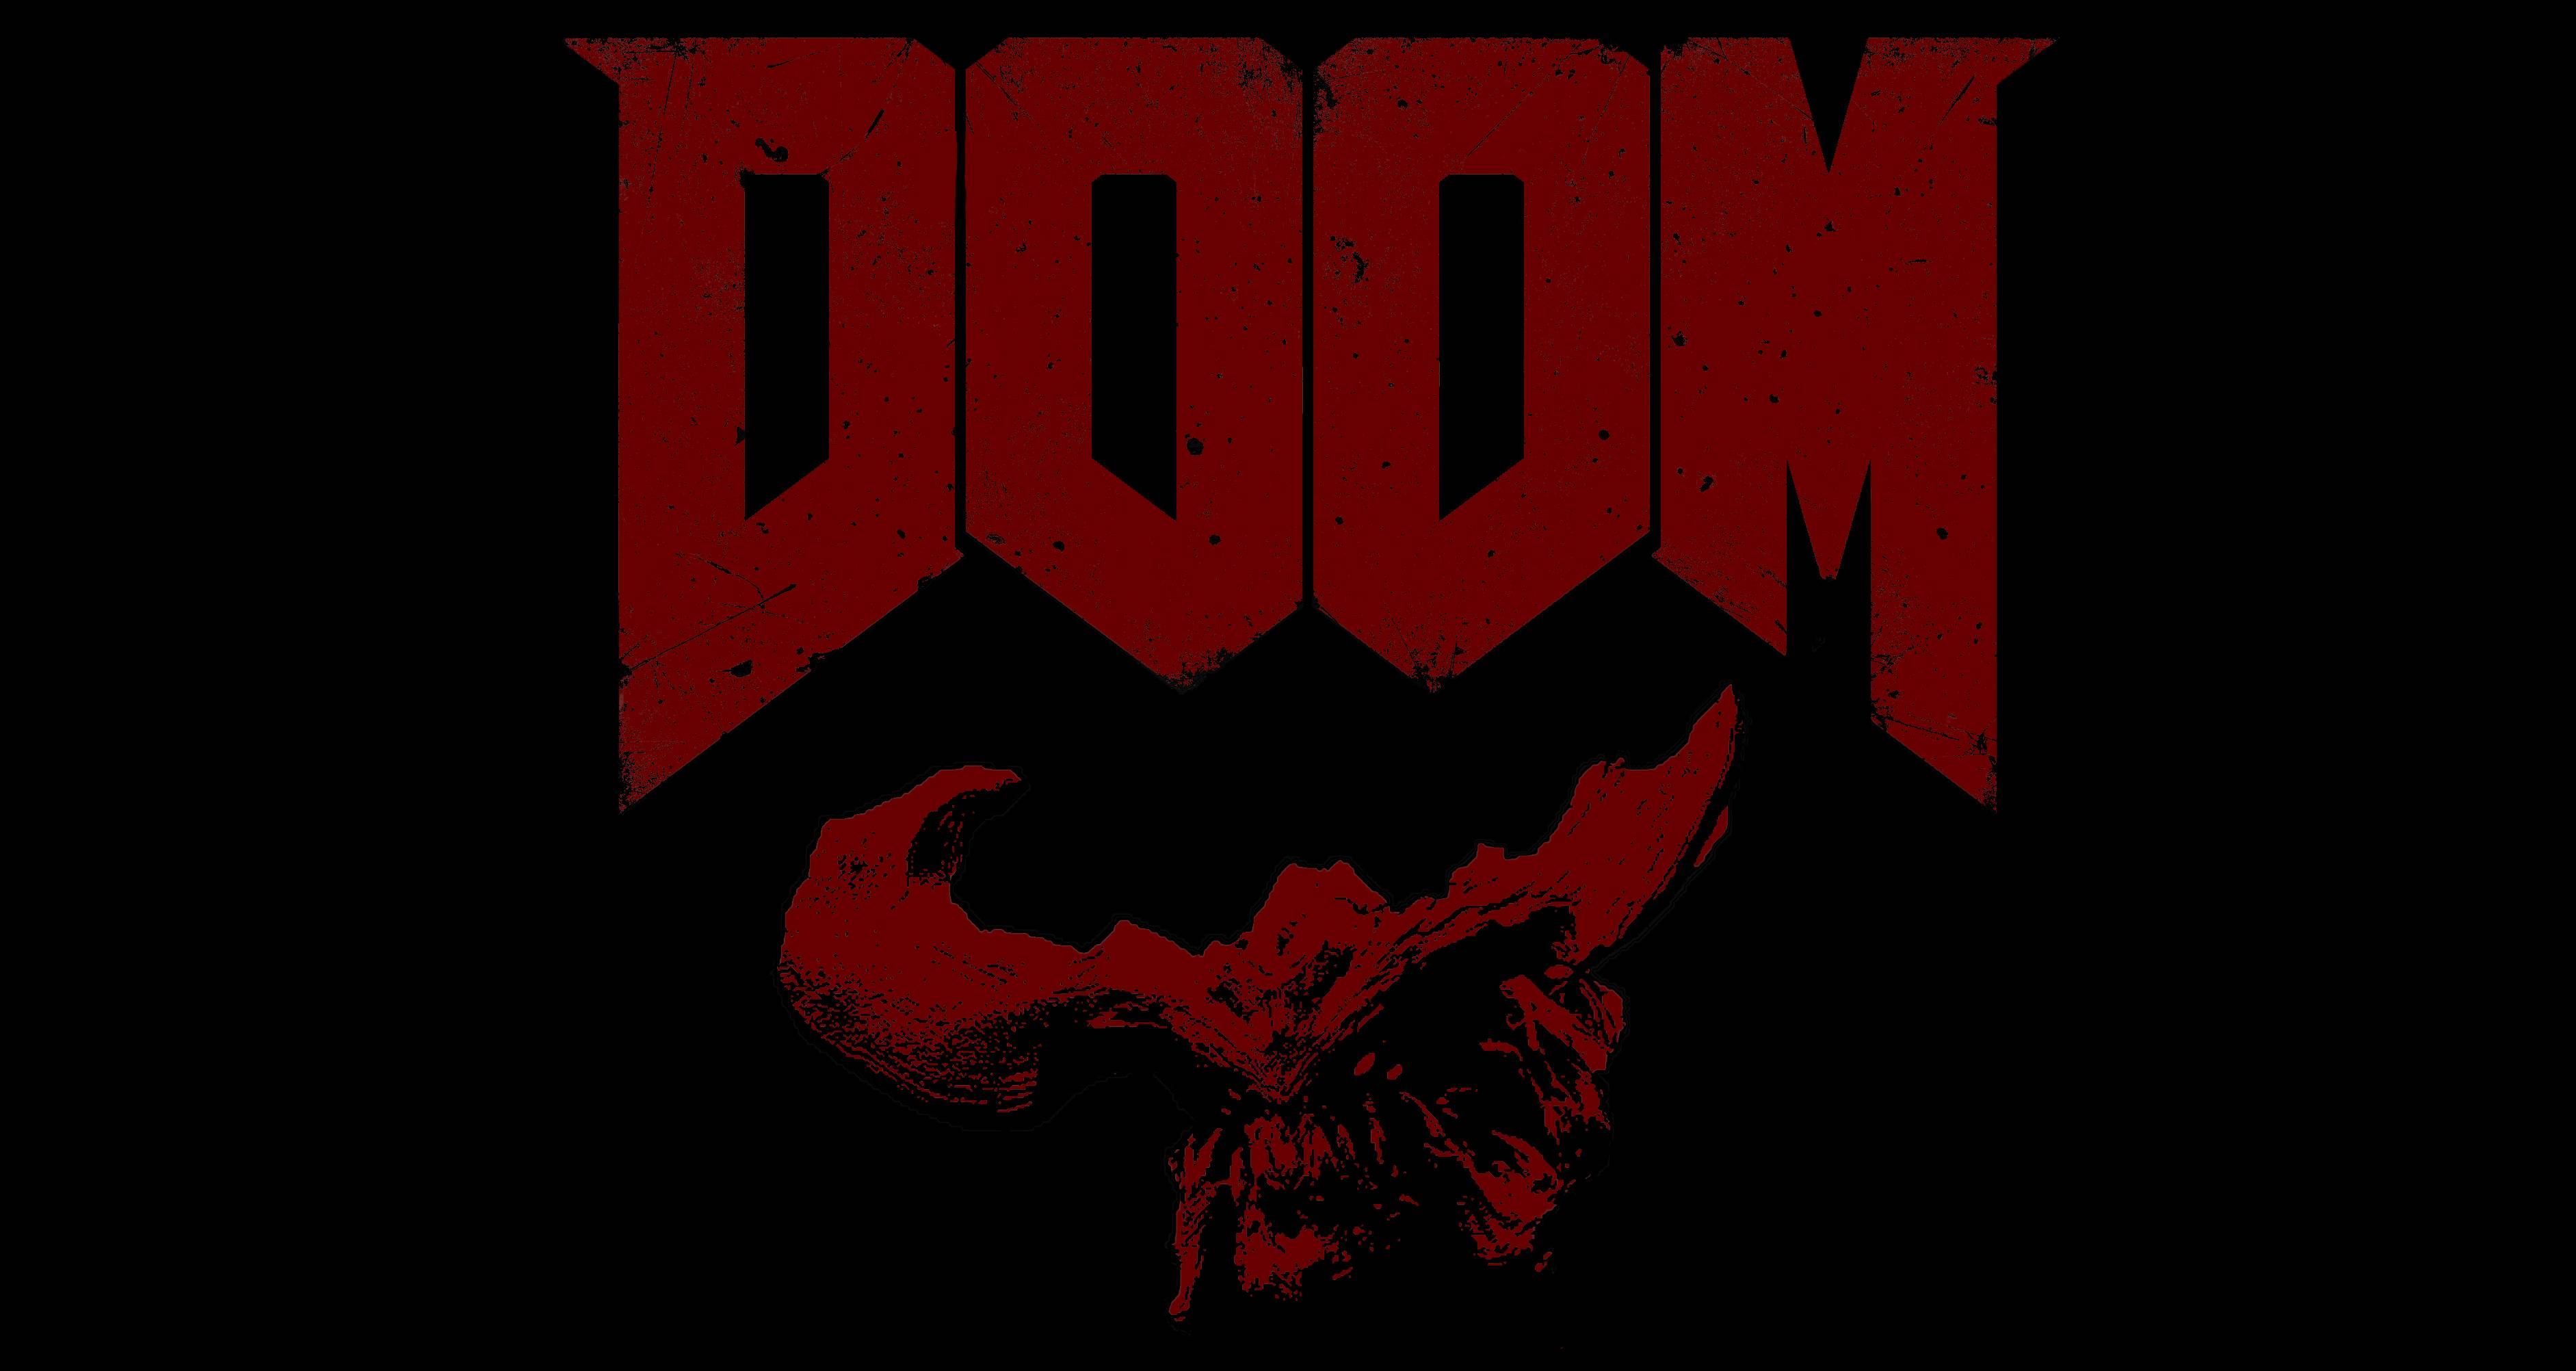 4K Doom wallpaper I made for you guys to enjoy!